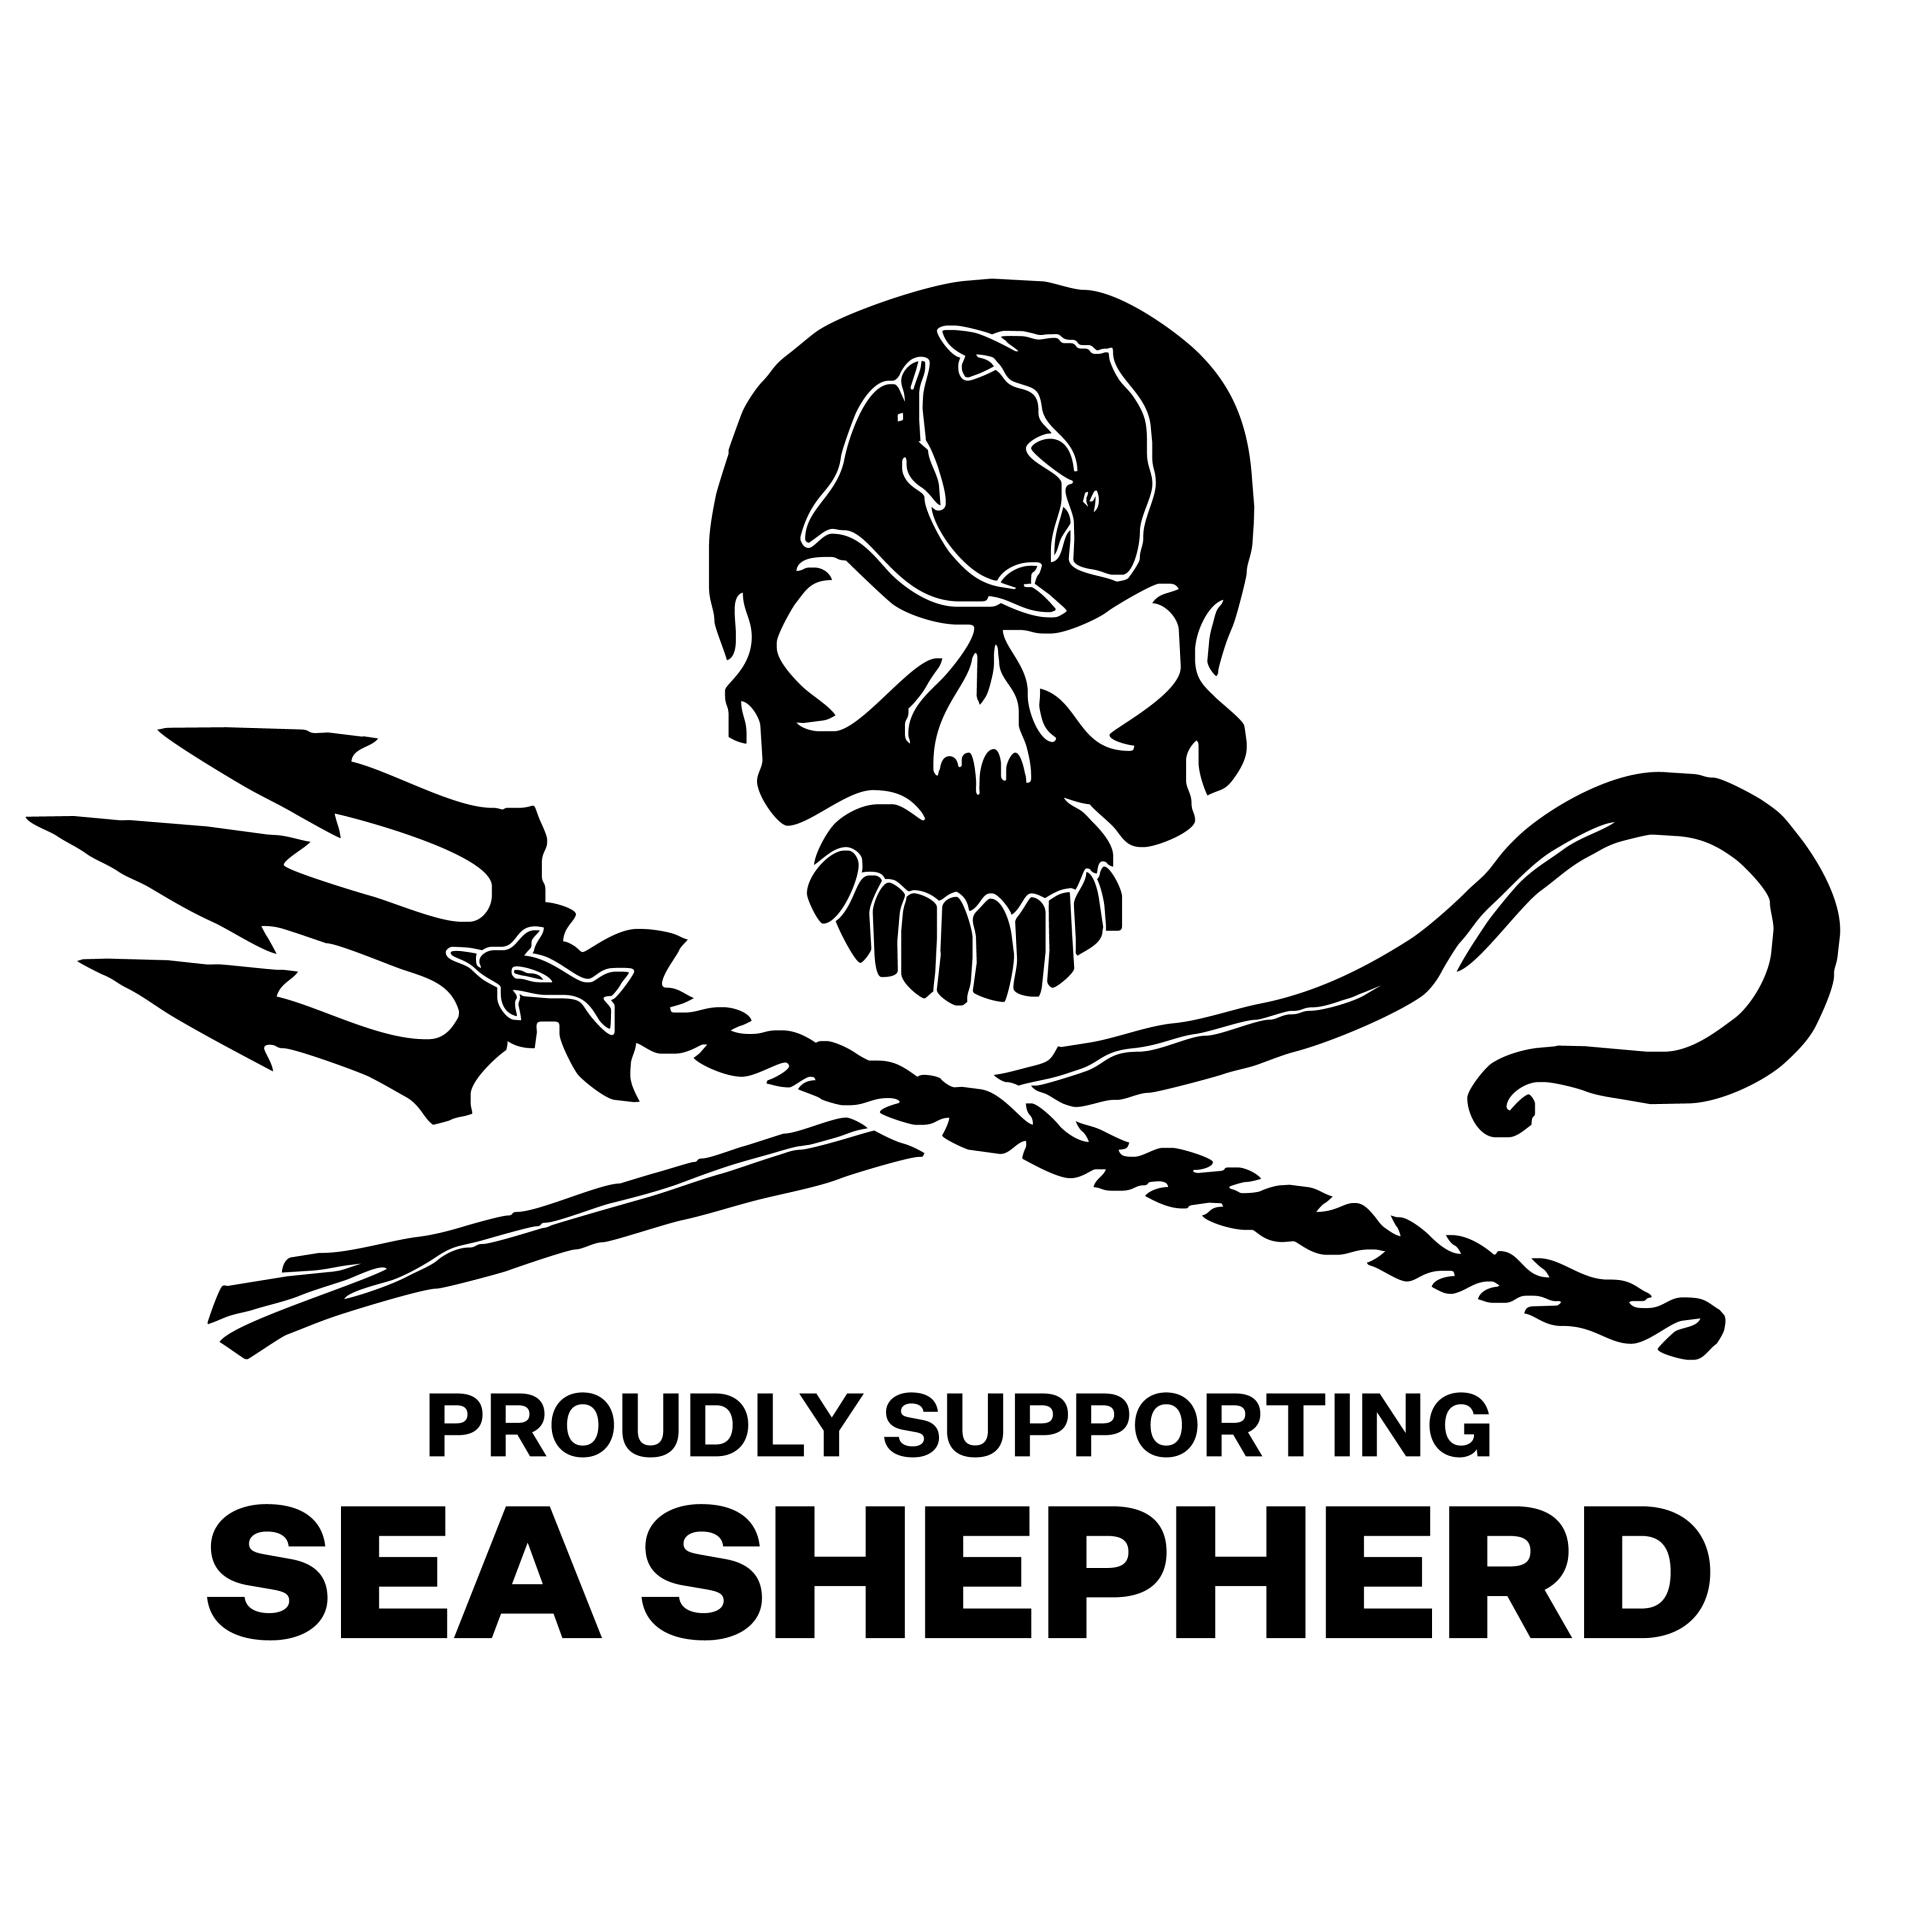 SEA SHEPHERD SUPPORT BY GERLACH